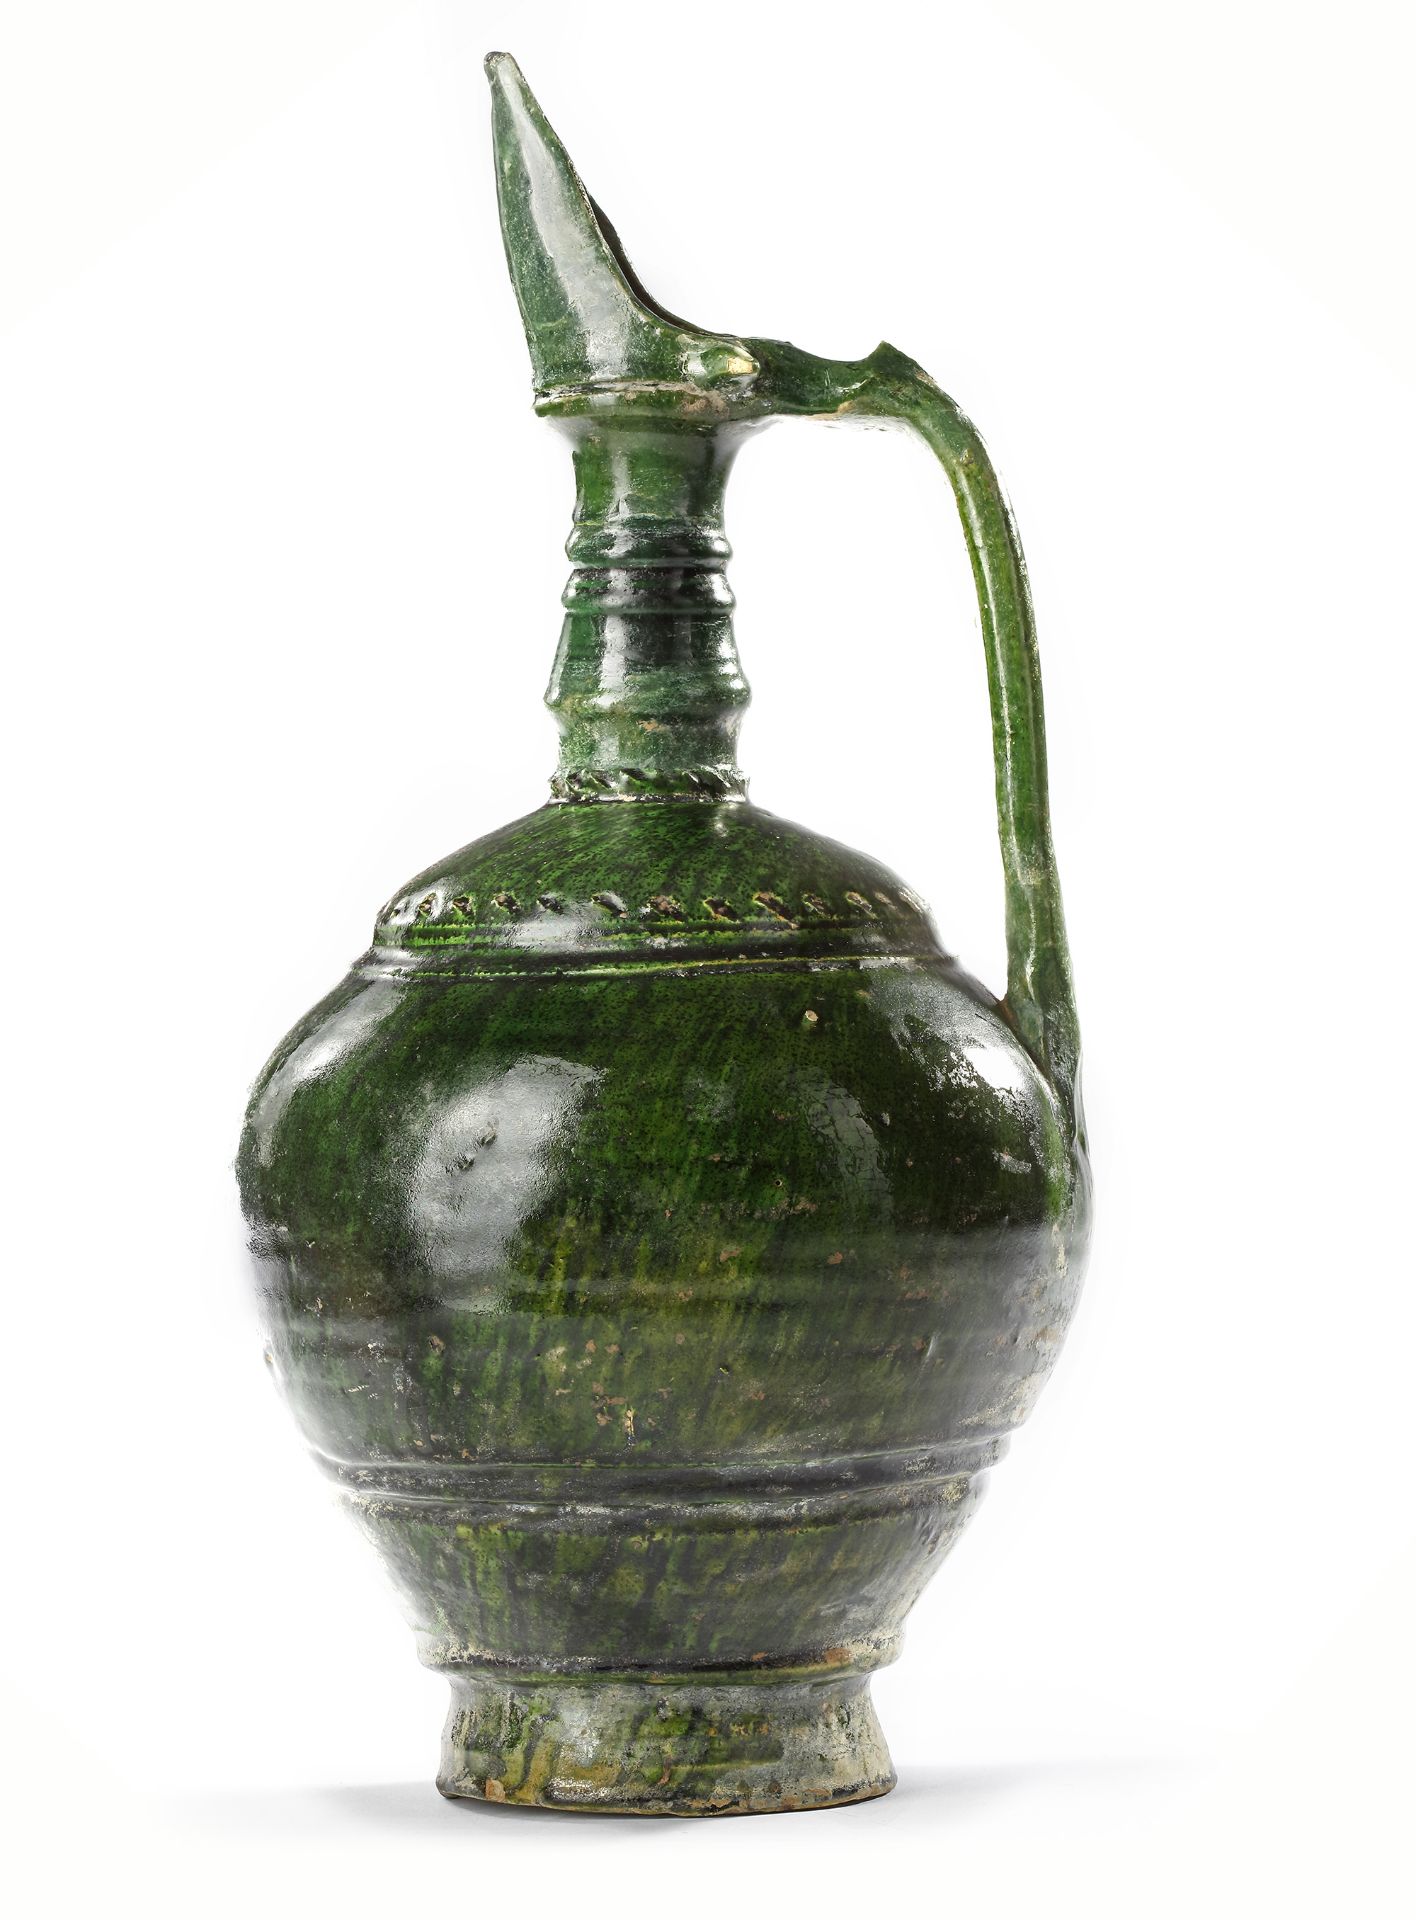 A UMAYYAD GREEN GLAZED POTTERY JUG, EASTERN MEDITERRANEAN, 8TH-9TH CENTURY